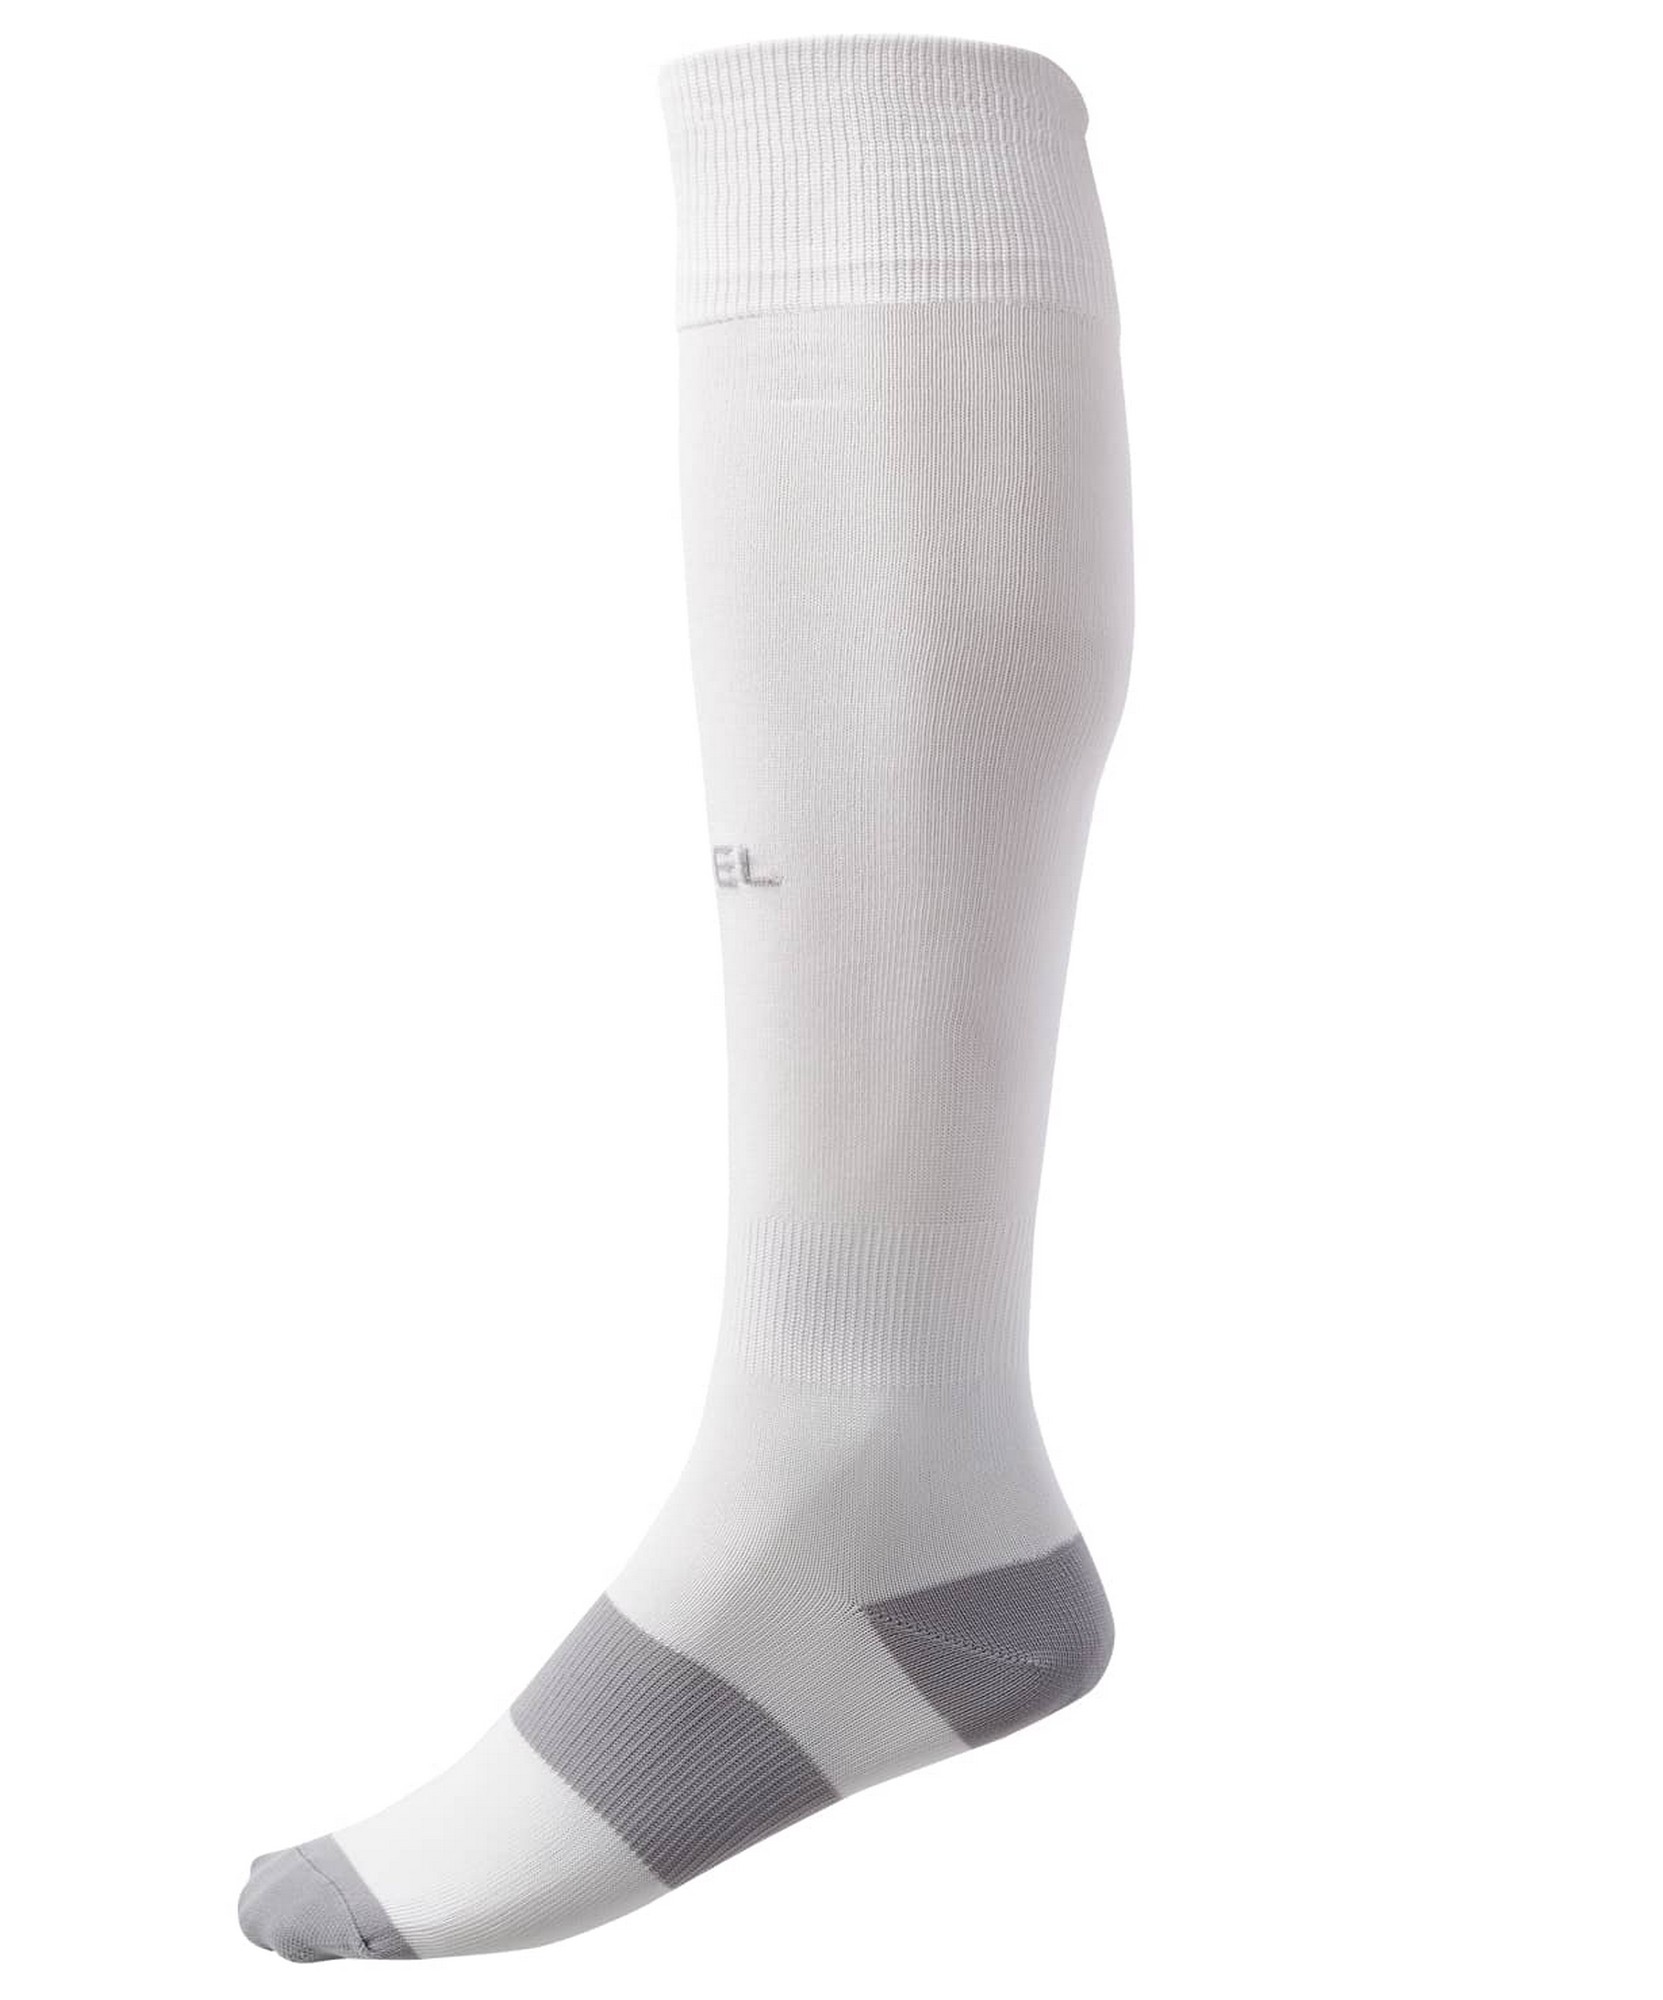 Гетры футбольные Jogel Camp Basic Socks, белый\серый\серый 1663_2000